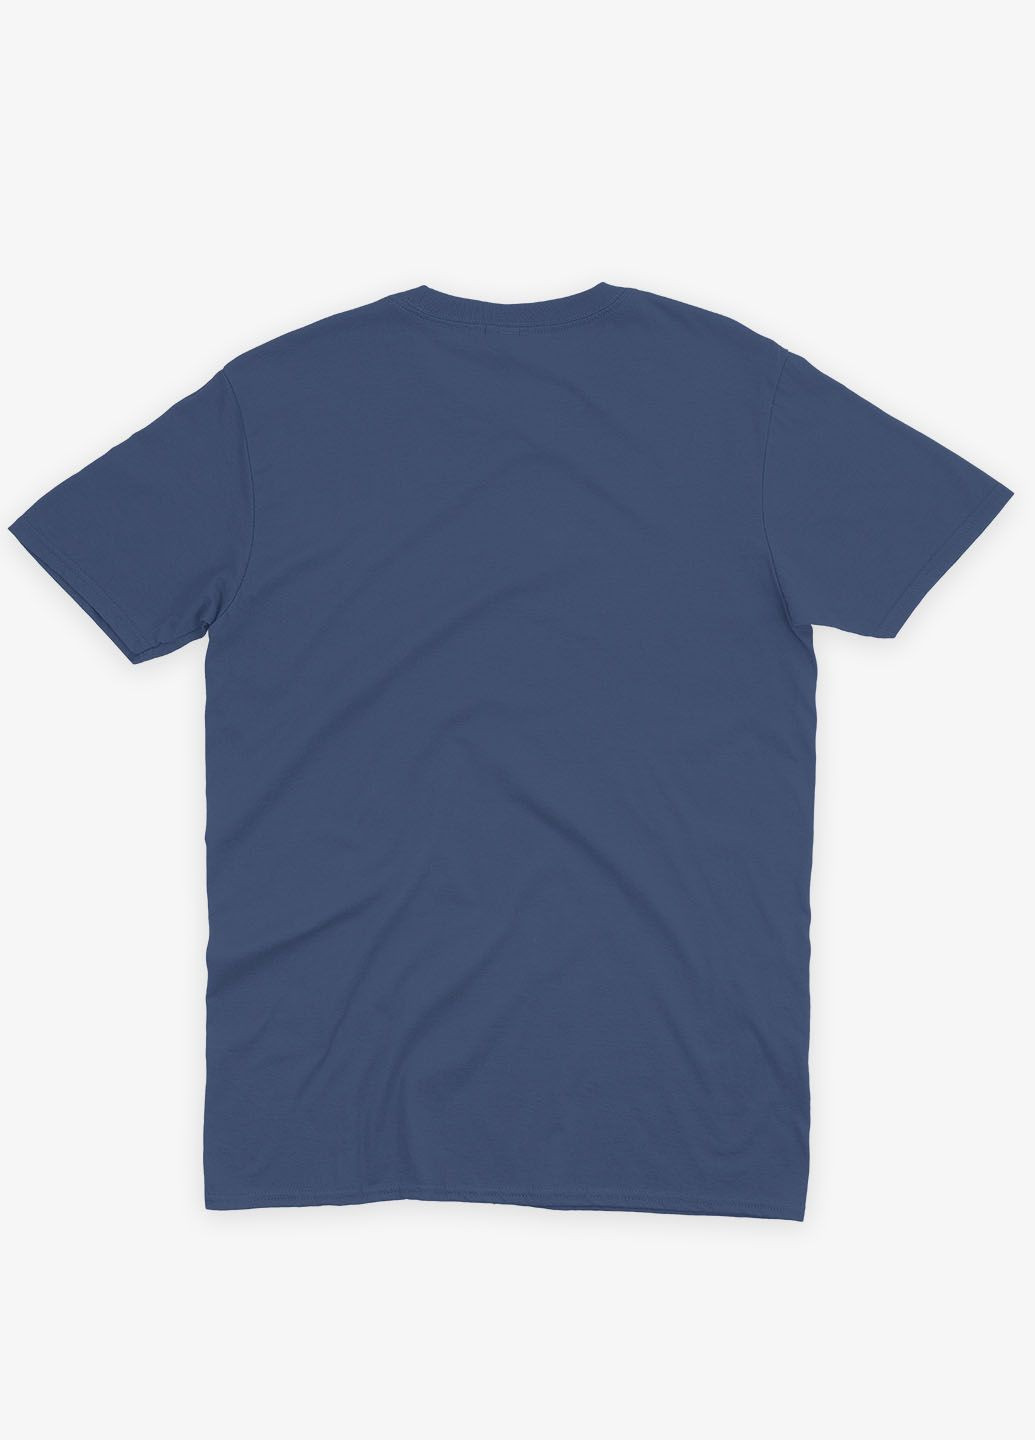 Темно-синяя демисезонная футболка для мальчика с патриотическим принтом stop war (ts001-3-nav-005-1-077-b) Modno